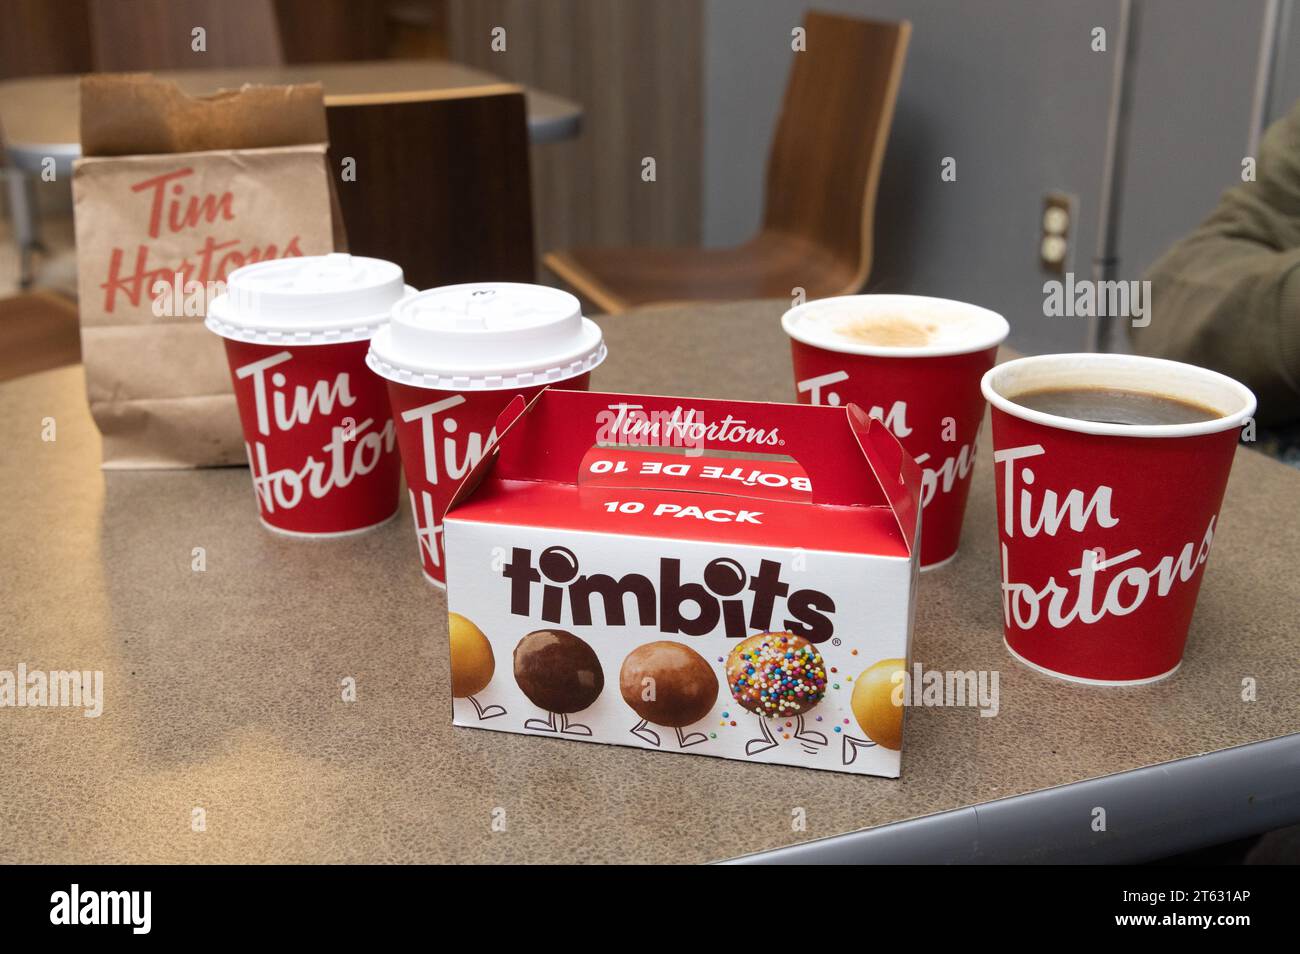 Tim Hortons Café, Kaffee und Essen. Ein kanadisches Café-Restaurant. Coffee Becher und Timbits aus der Nähe; Halifax Nova Scotia Kanada. Stockfoto